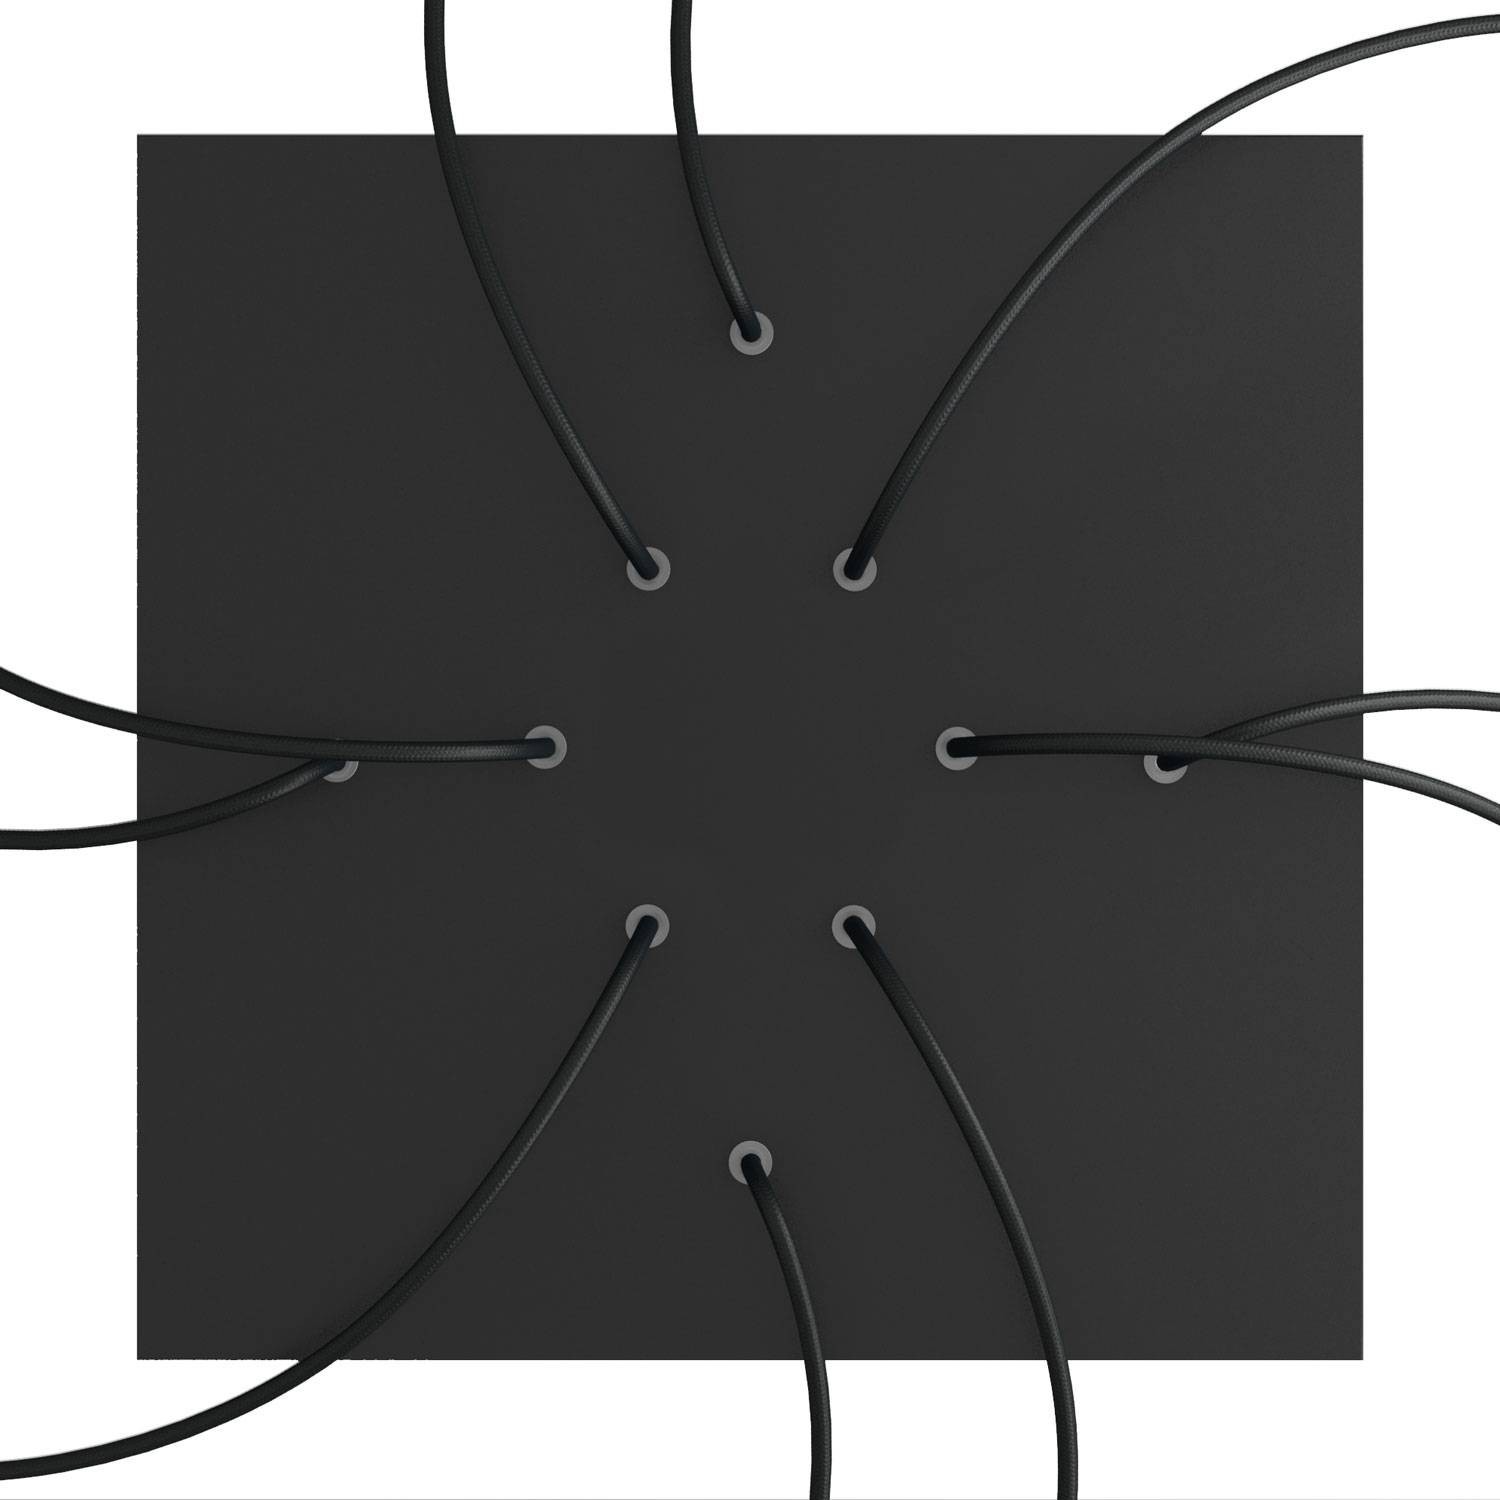 Komplett 400mm takkopp Rose-One System kvadrat - 10 hål og 4 sidehål